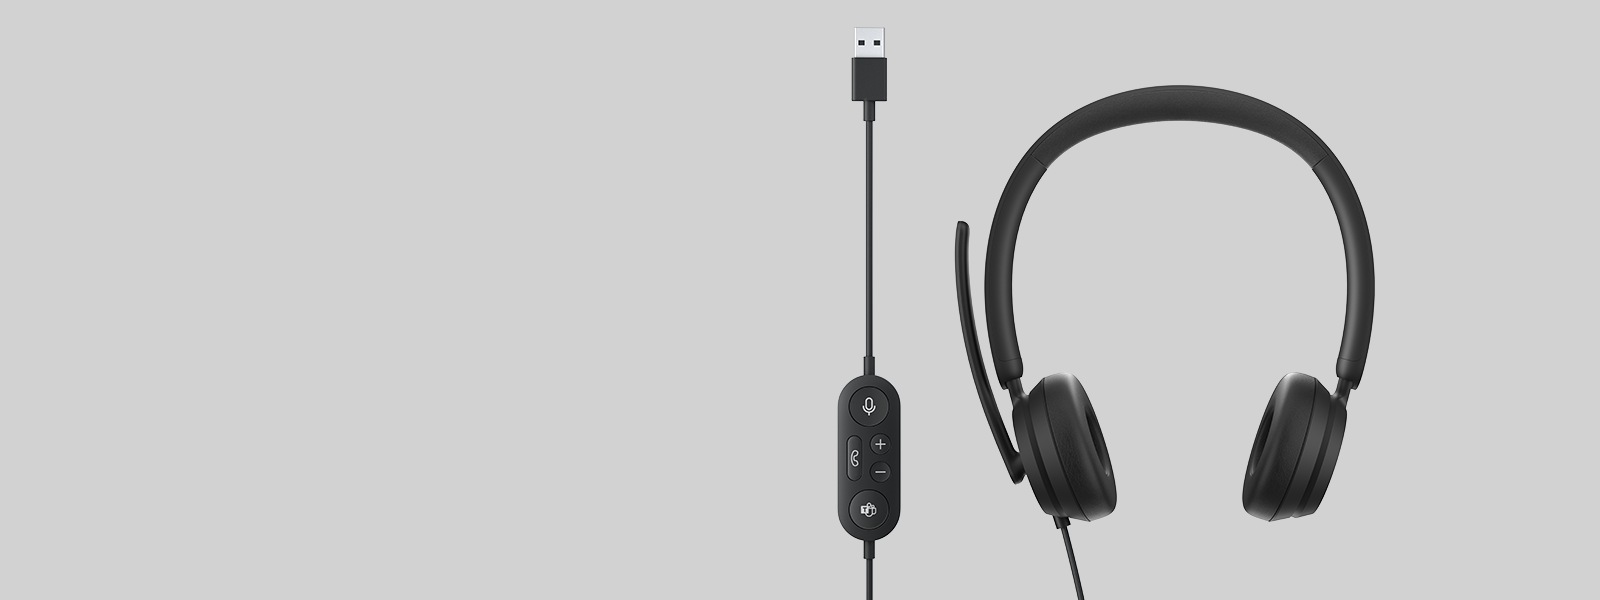 Ακουστικά Microsoft Modern USB Headset